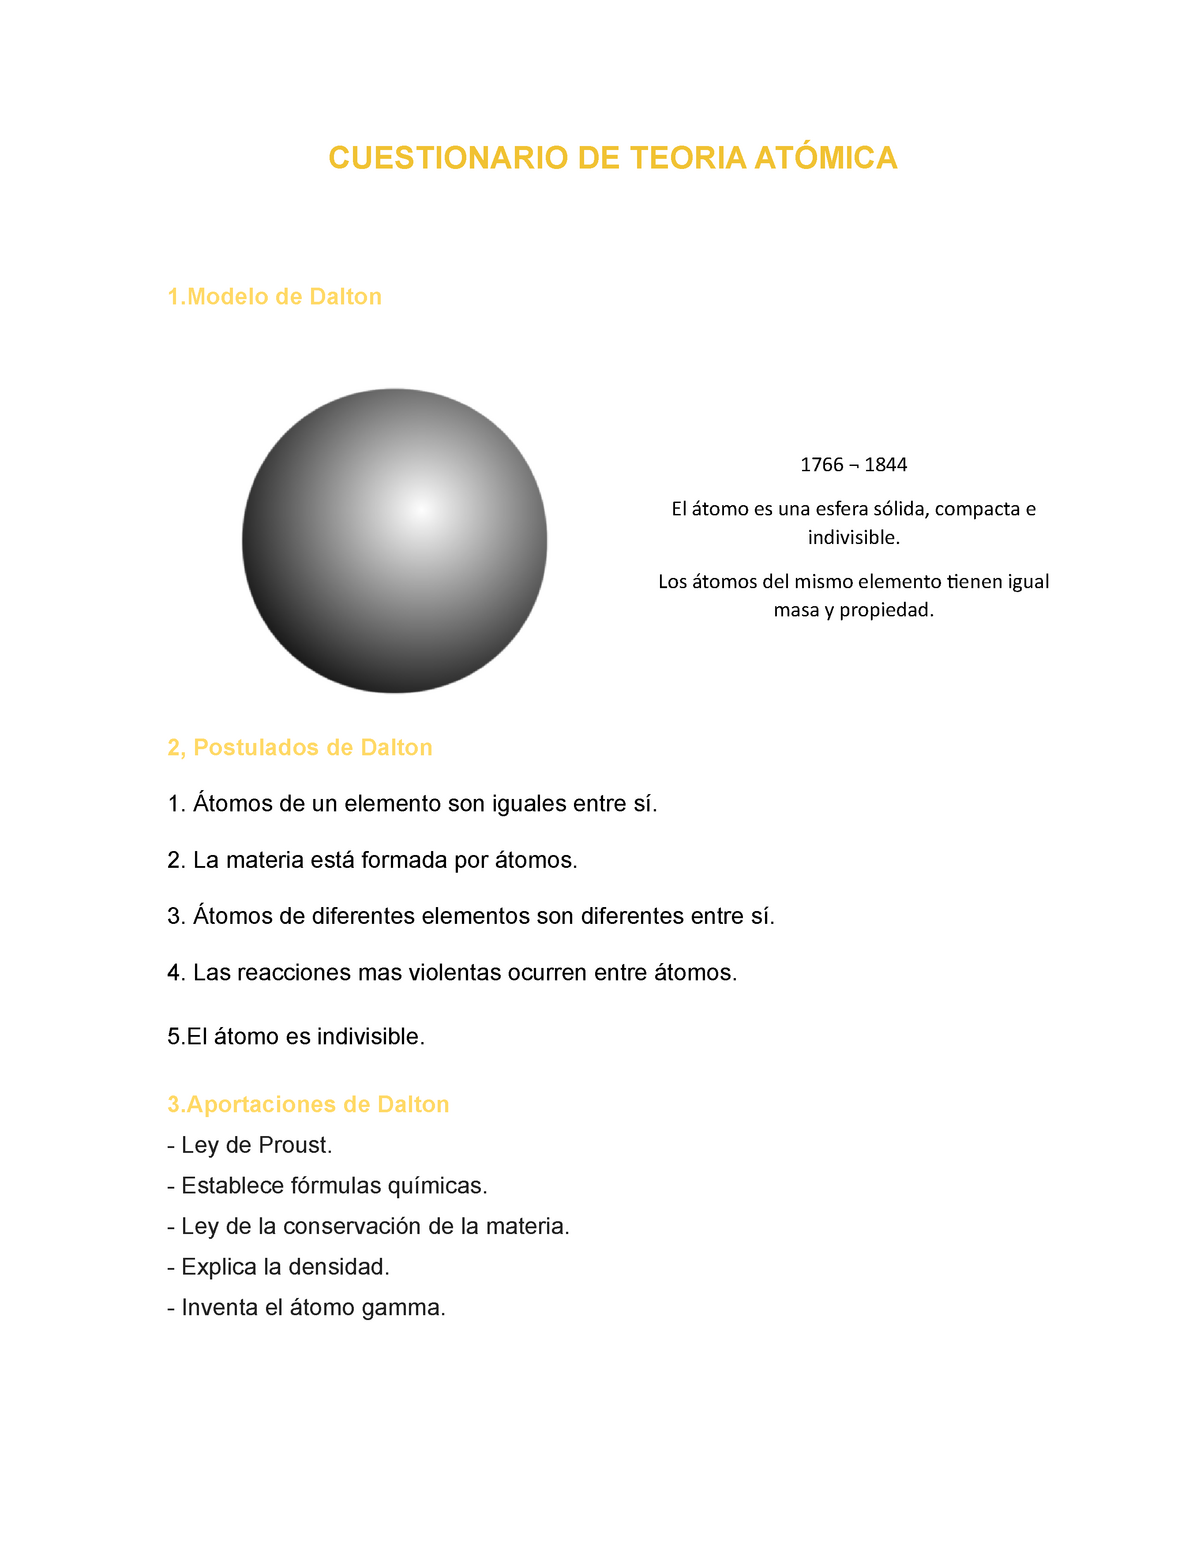 Cuestionario de Teoría Atómica - CUESTIONARIO DE TEORIA ATÓMICA 1 de Dalton  2, Postulados de Dalton - Studocu